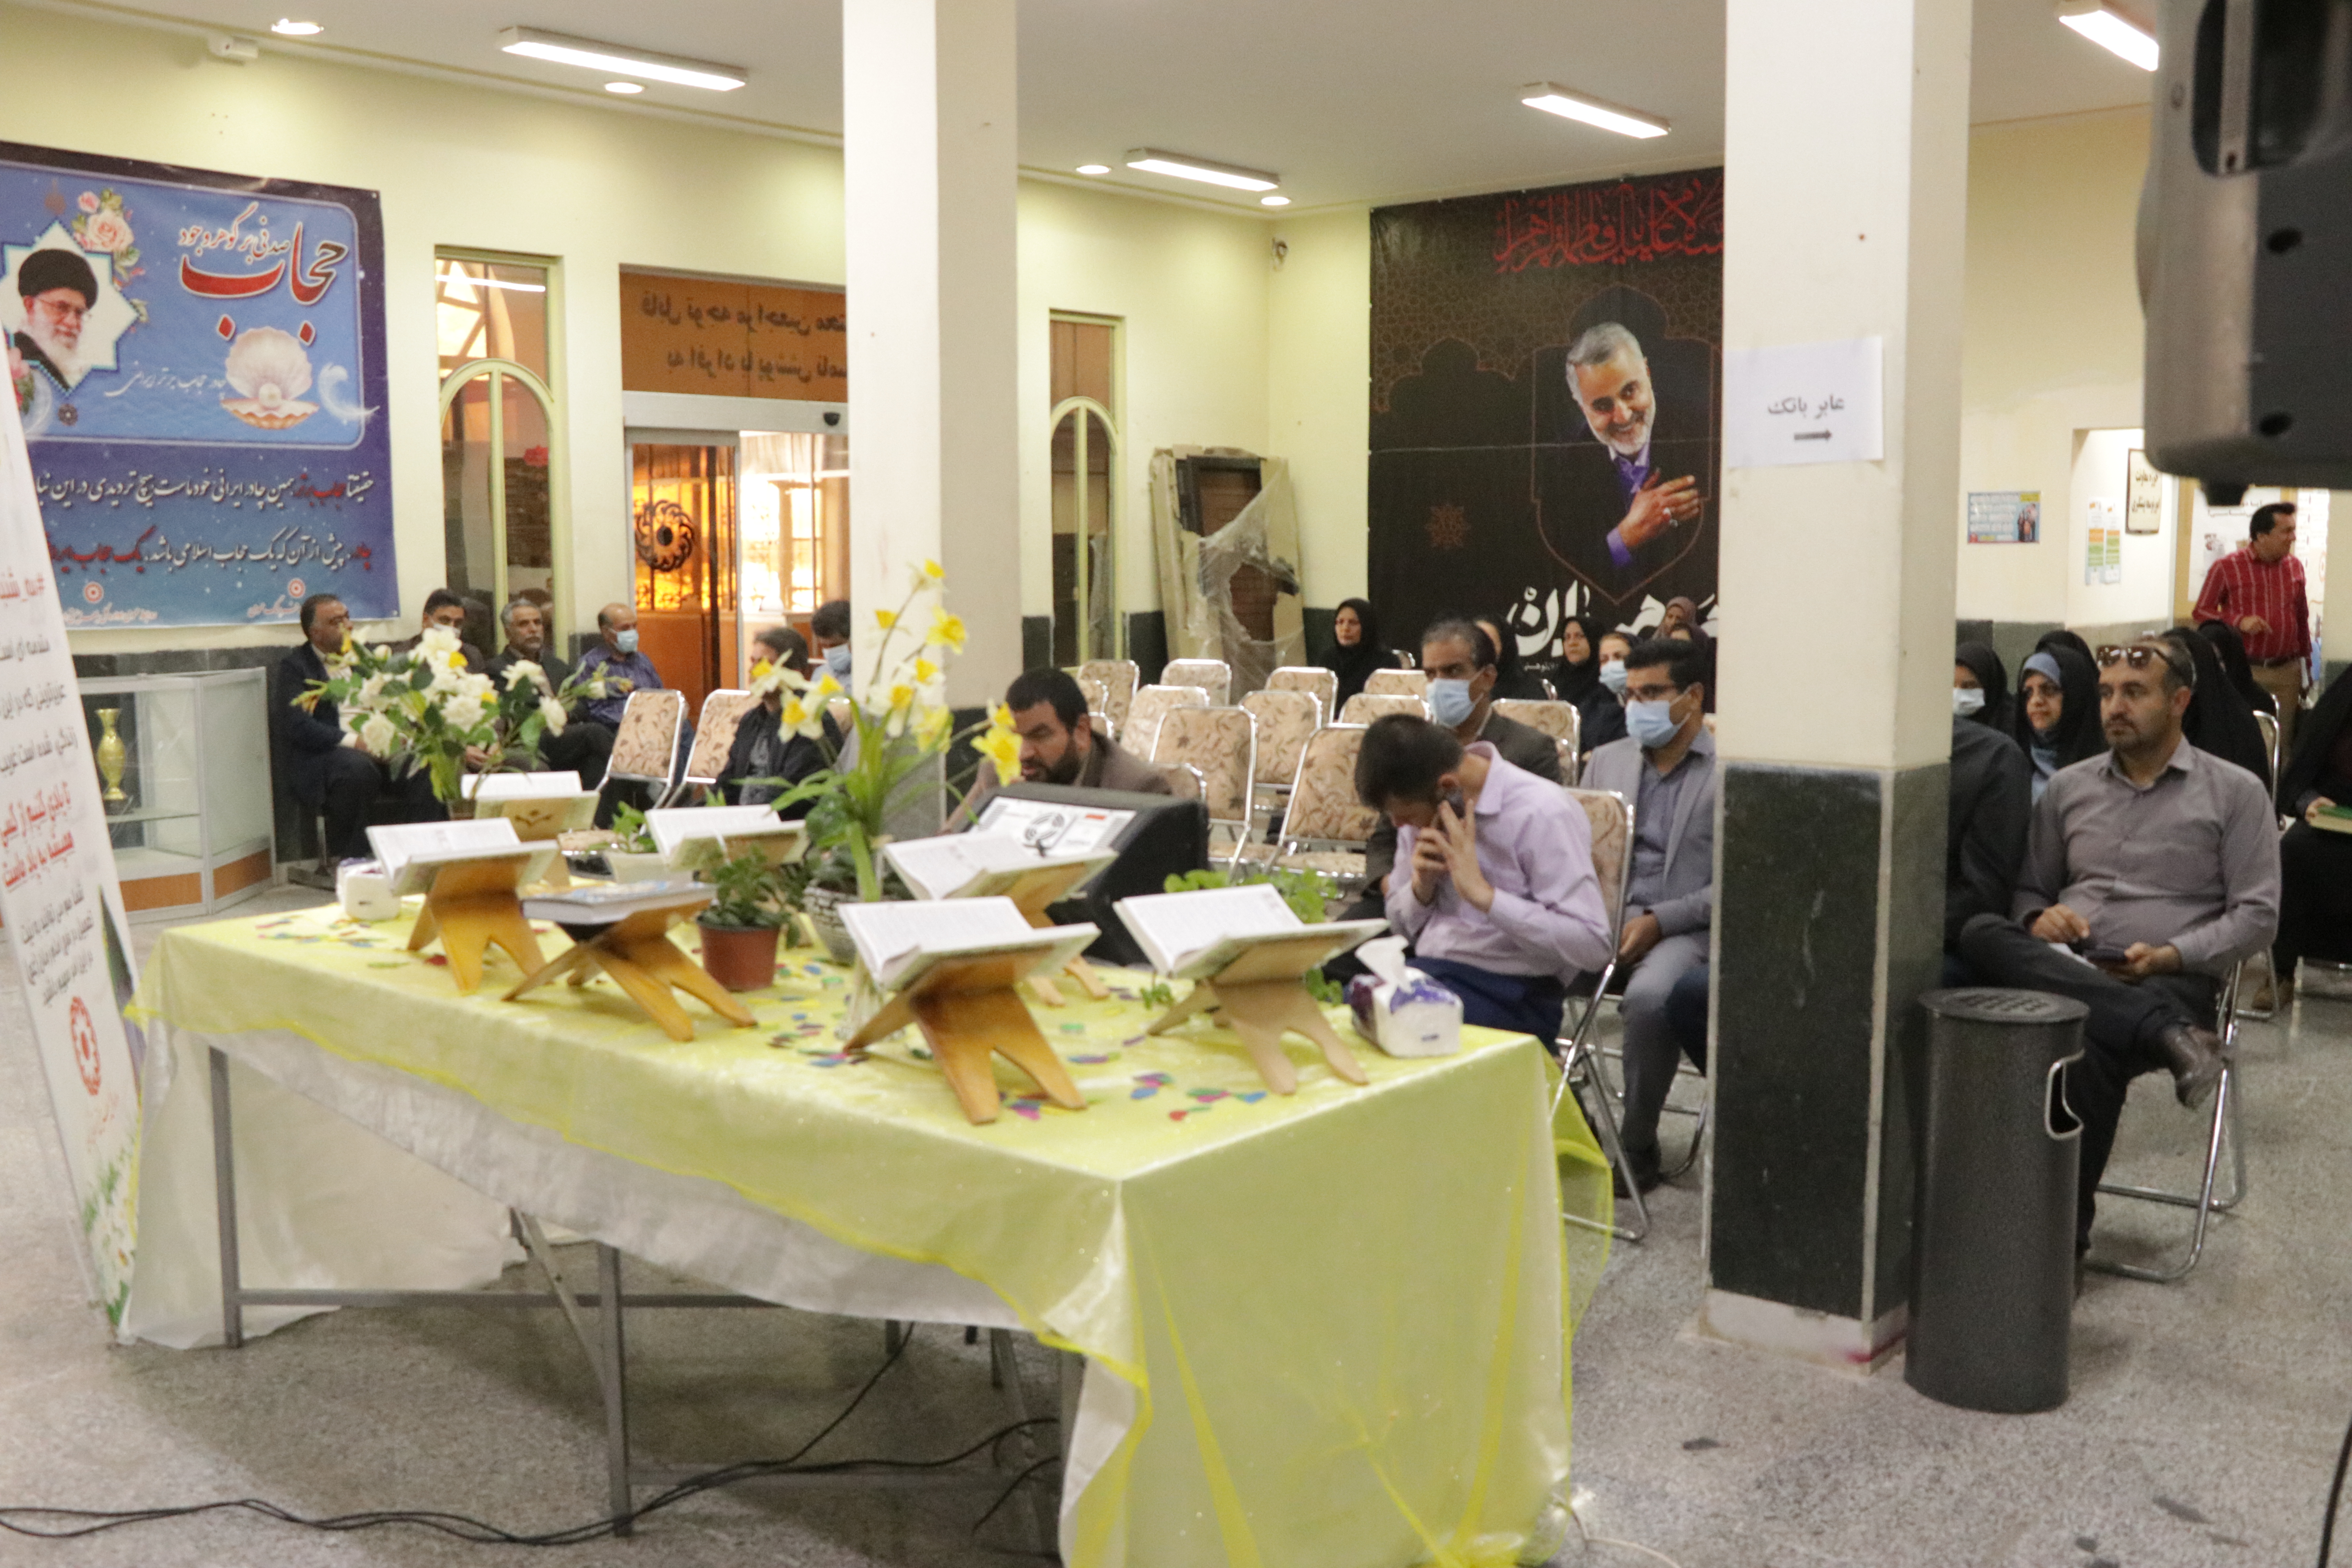 طنین آوای ملکوتی قرآن  در سه شنبه مهدوی این هفته ستاد بهزیستی استان کرمان